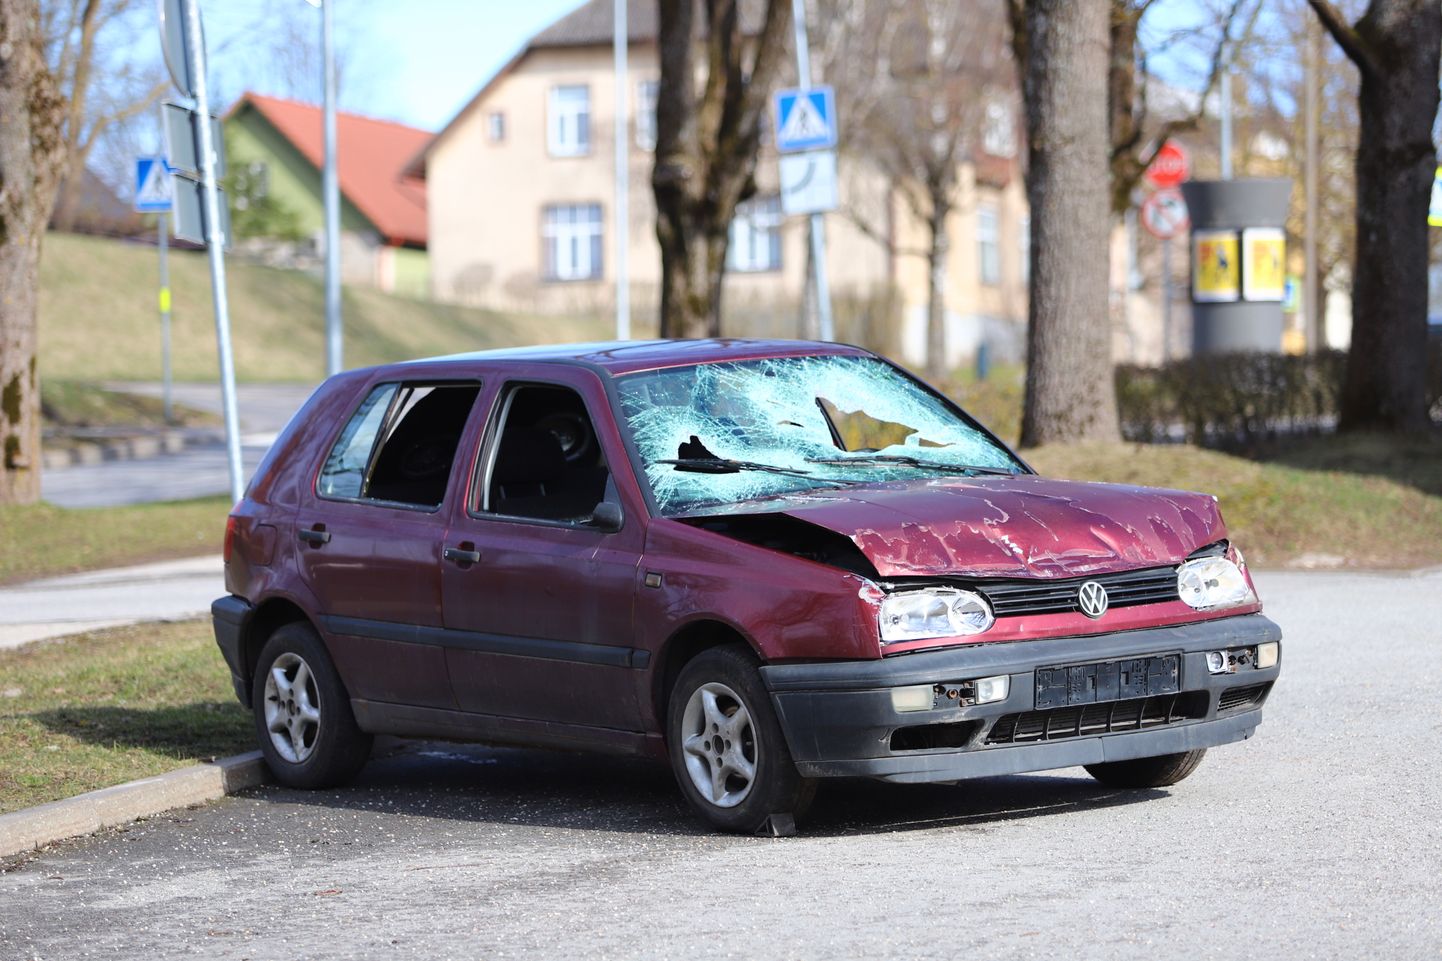 Vana-Vaksali tänaval seisev avariiline auto sai uusi vigastusi rüüstajate käe läbi.